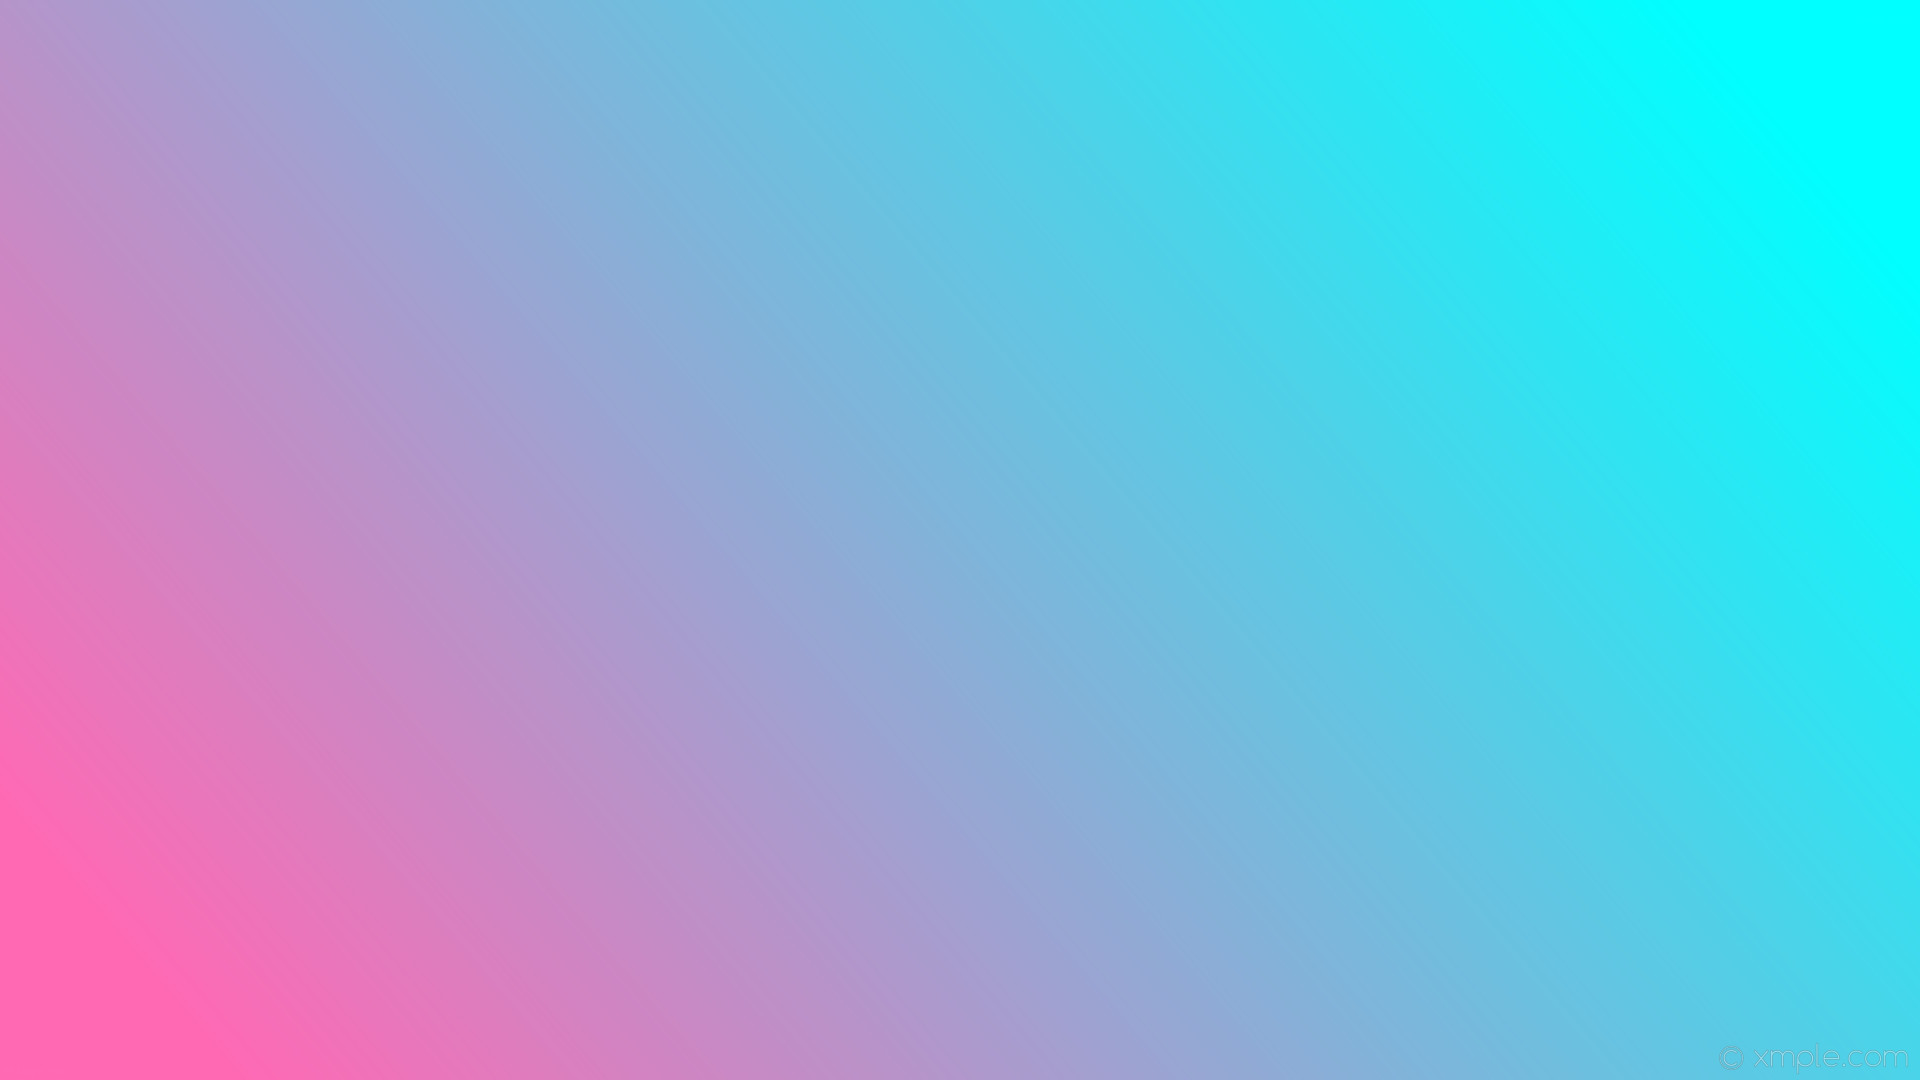 1920x1080 wallpaper blue linear gradient pink aqua cyan hot pink #00ffff #ff69b4 15Â°